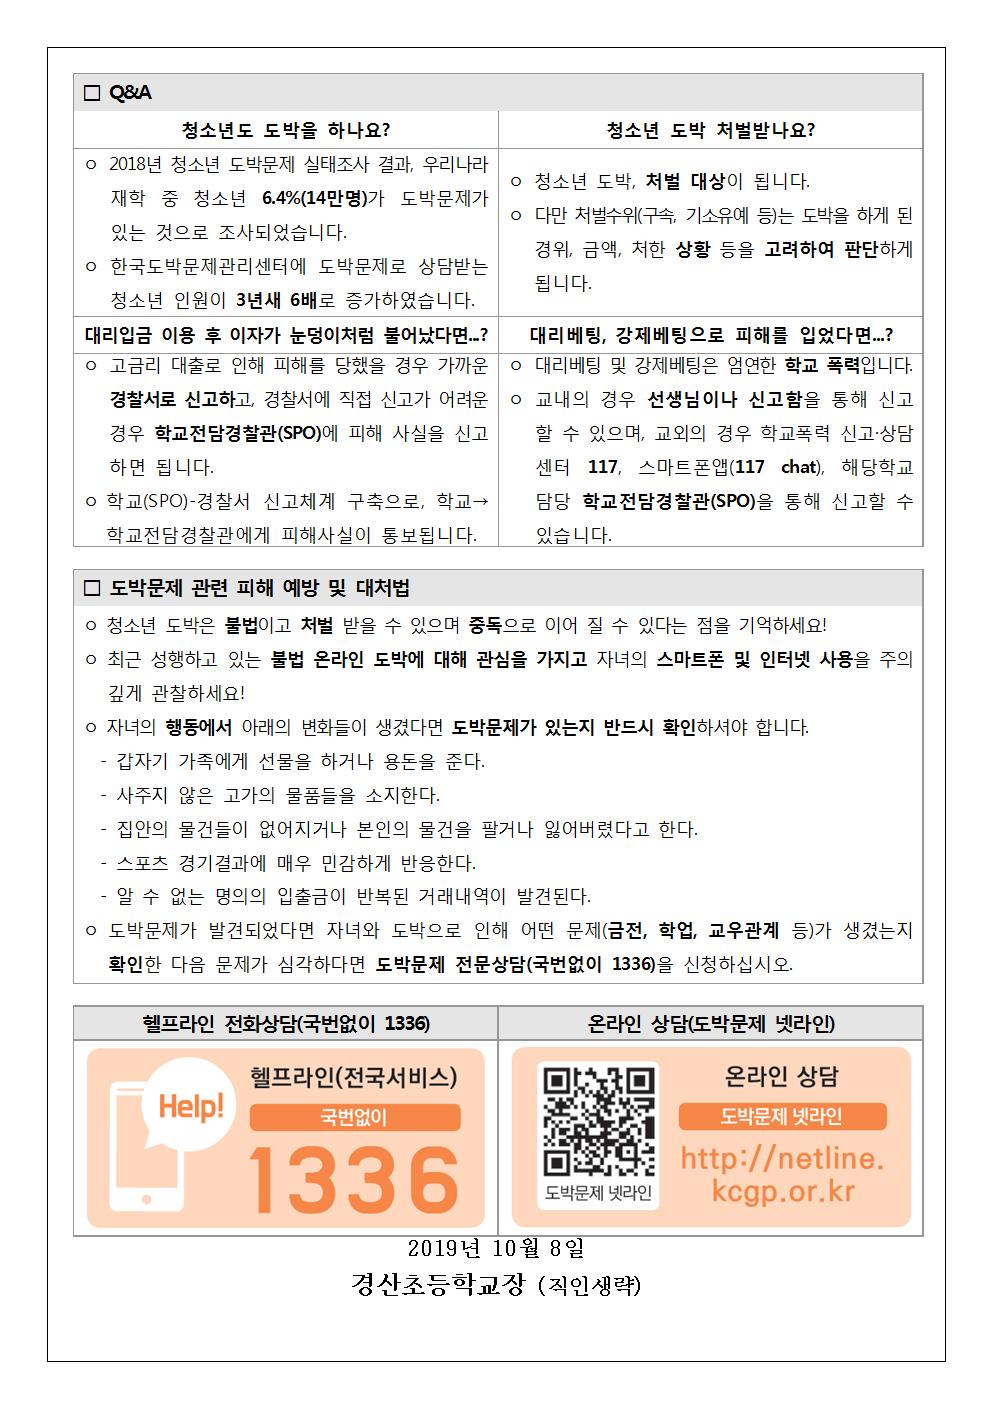 도박문제 관련 피해 예방 안내 가정통신문002